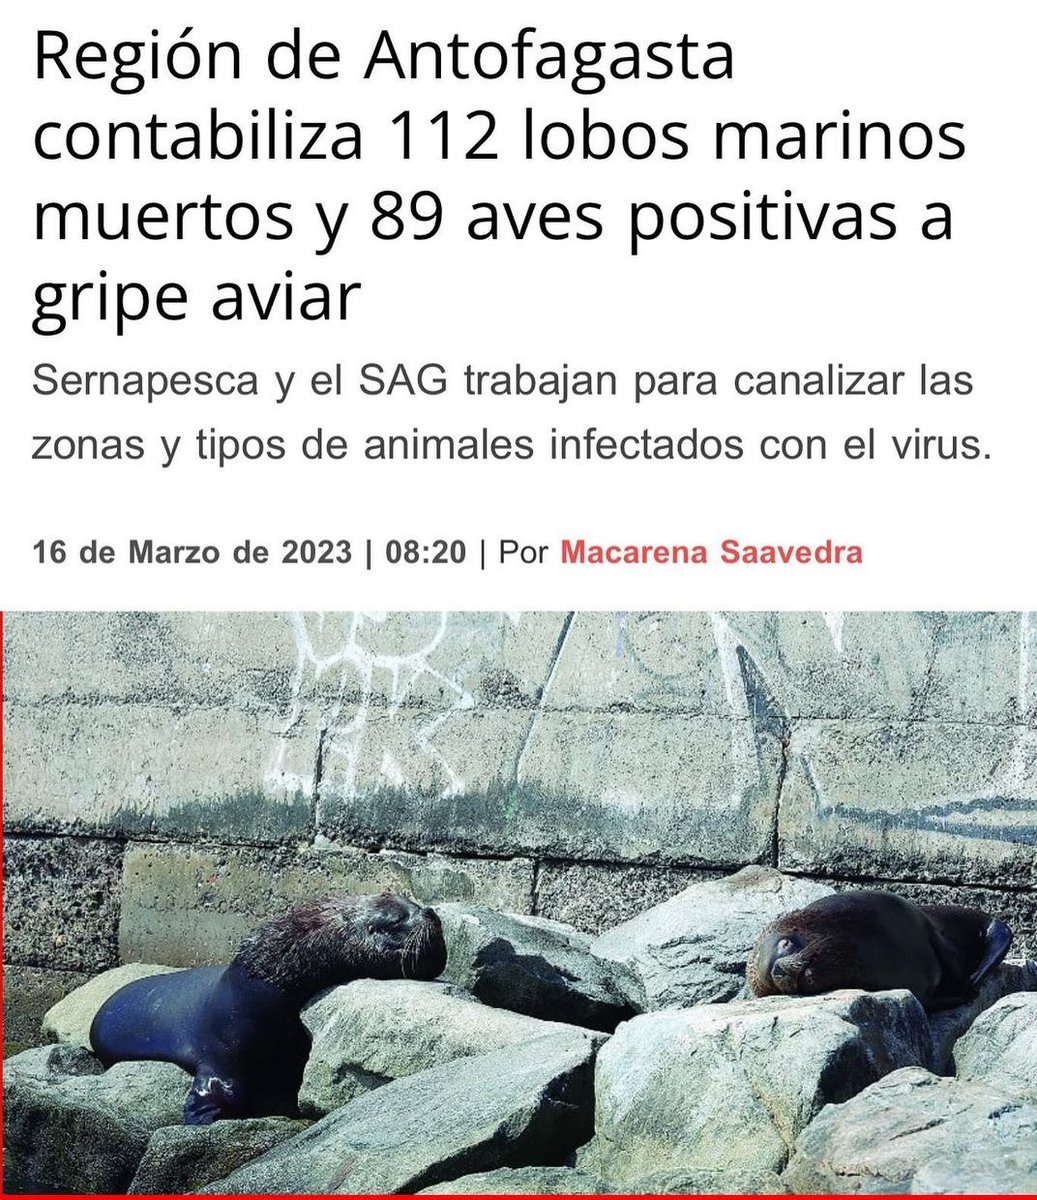 FUENTE SOYCHILE
La gripe aviar sigue cobrando vida en la fauna de la región de Antofagasta. En lo que va del 2023 se contabilizan a 112 lobos marinos muertos en diversos puntos del borde costero, de los cuales 62 de ellos. 
#Antofagasta